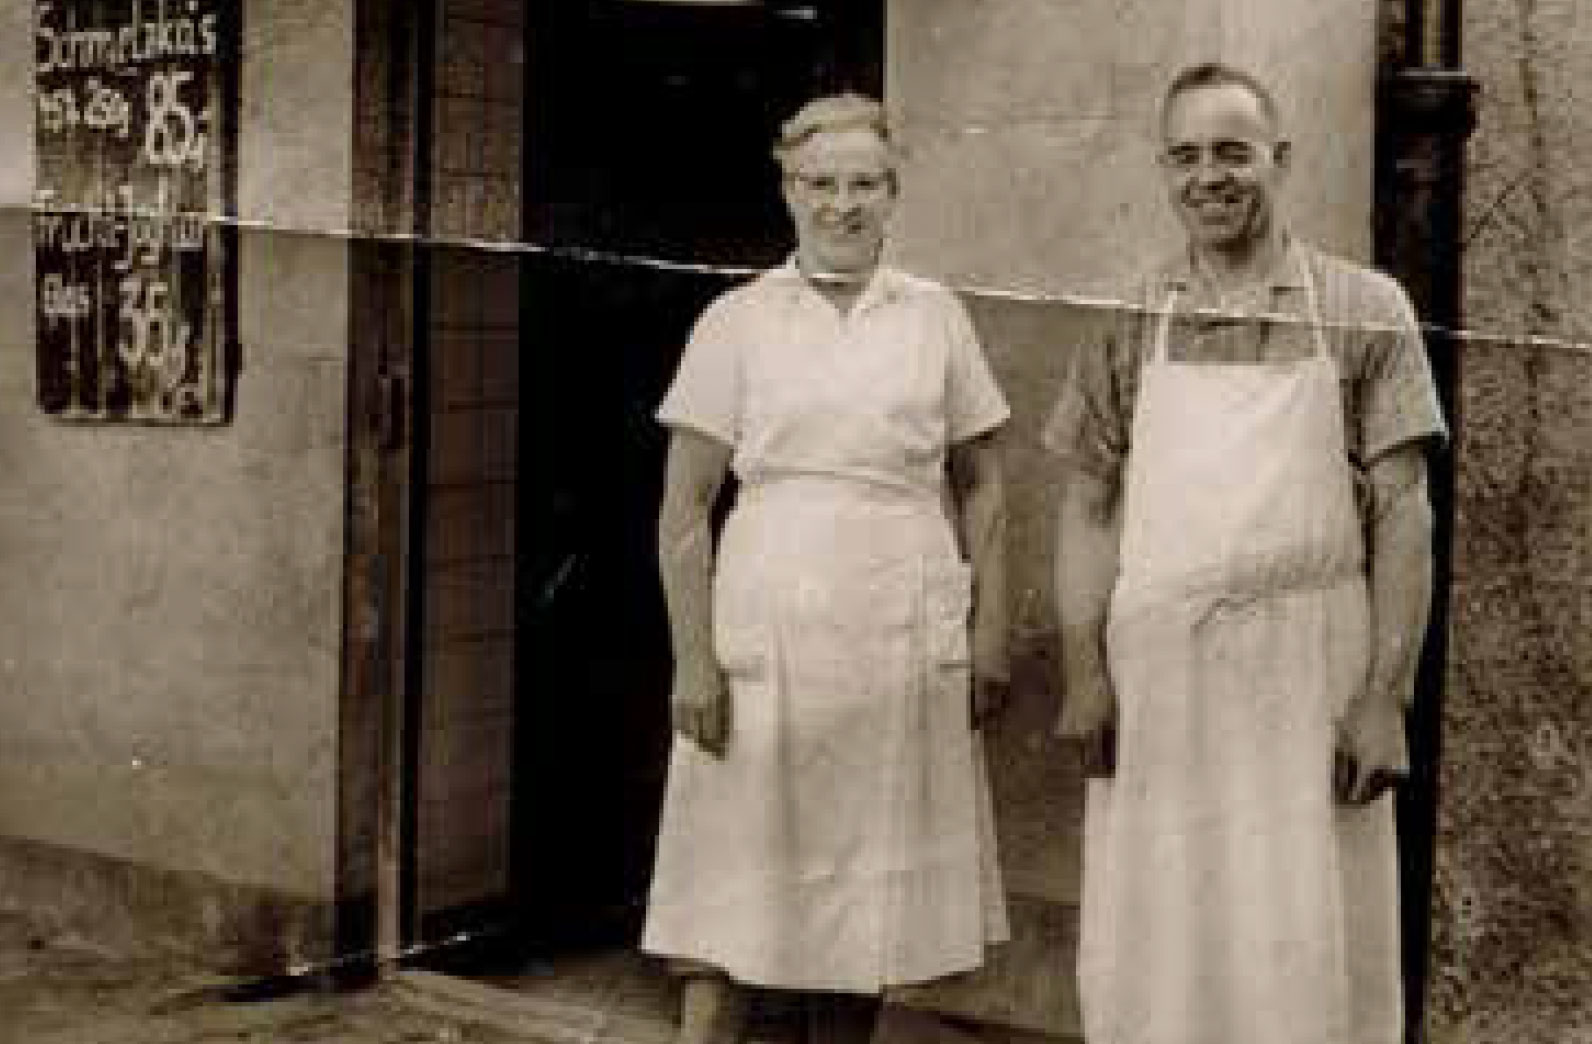 Das Ehepaar Josef Schorer (sen.) vor dem Milliladen, ca. 1950